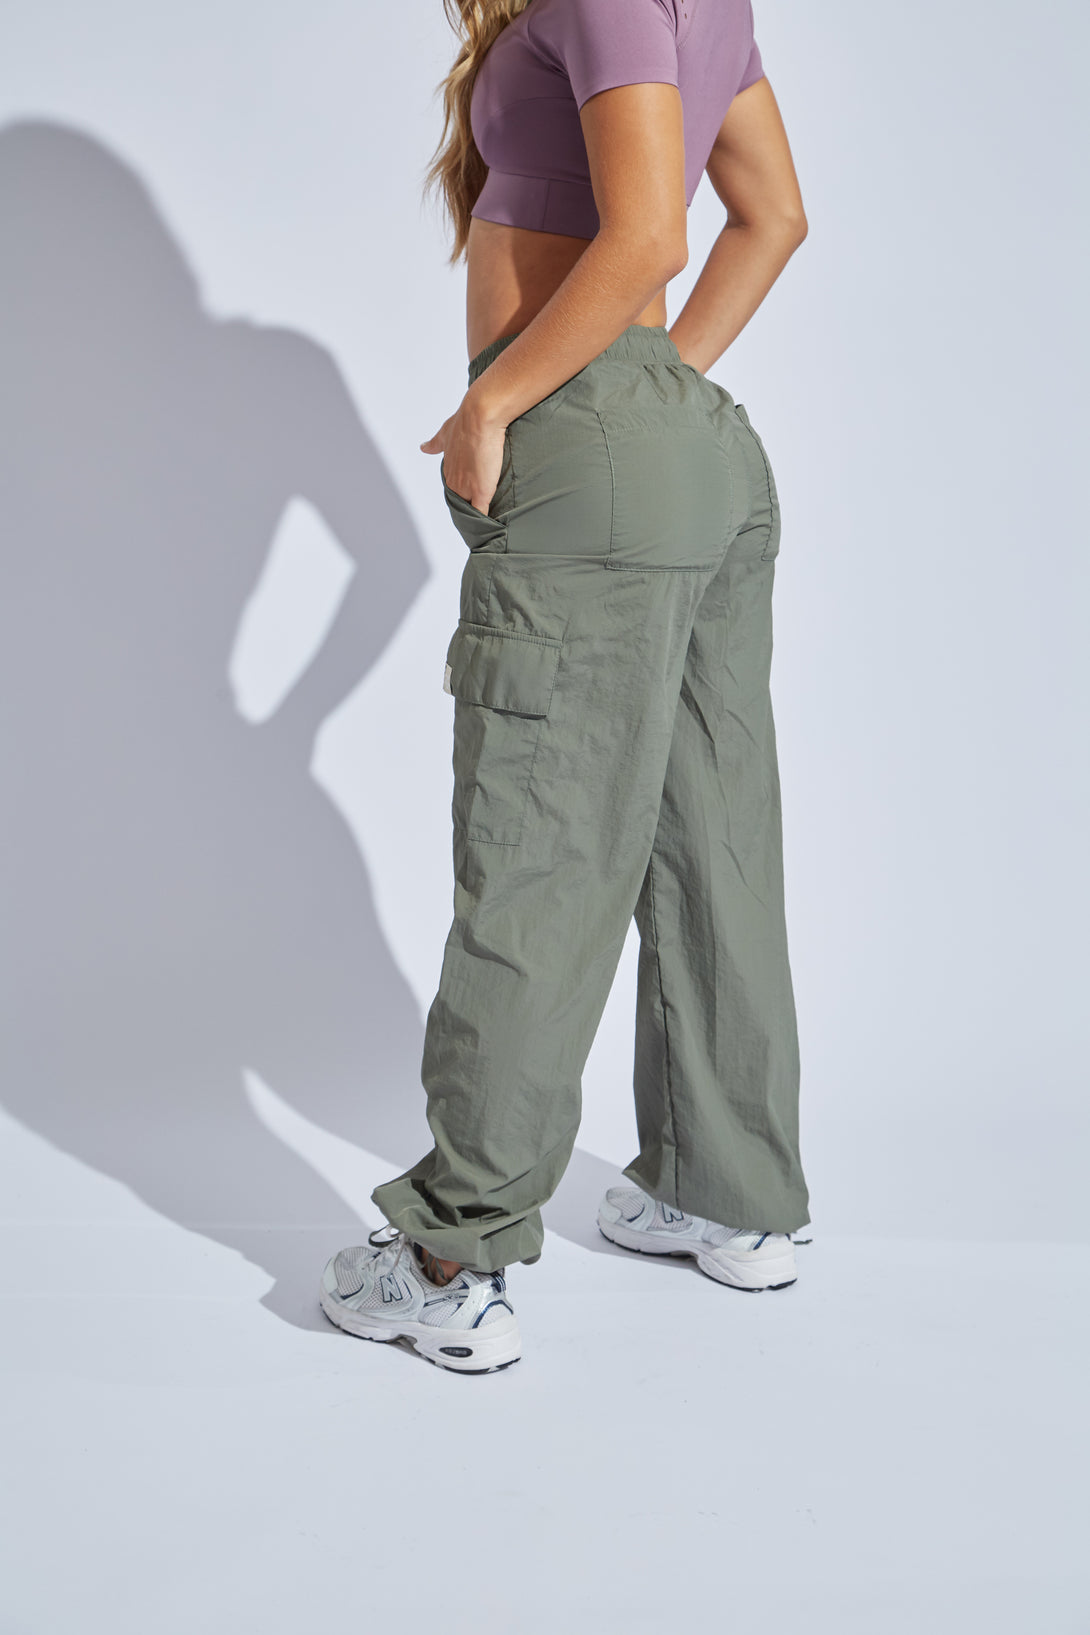 pantalon-jogger-mujer